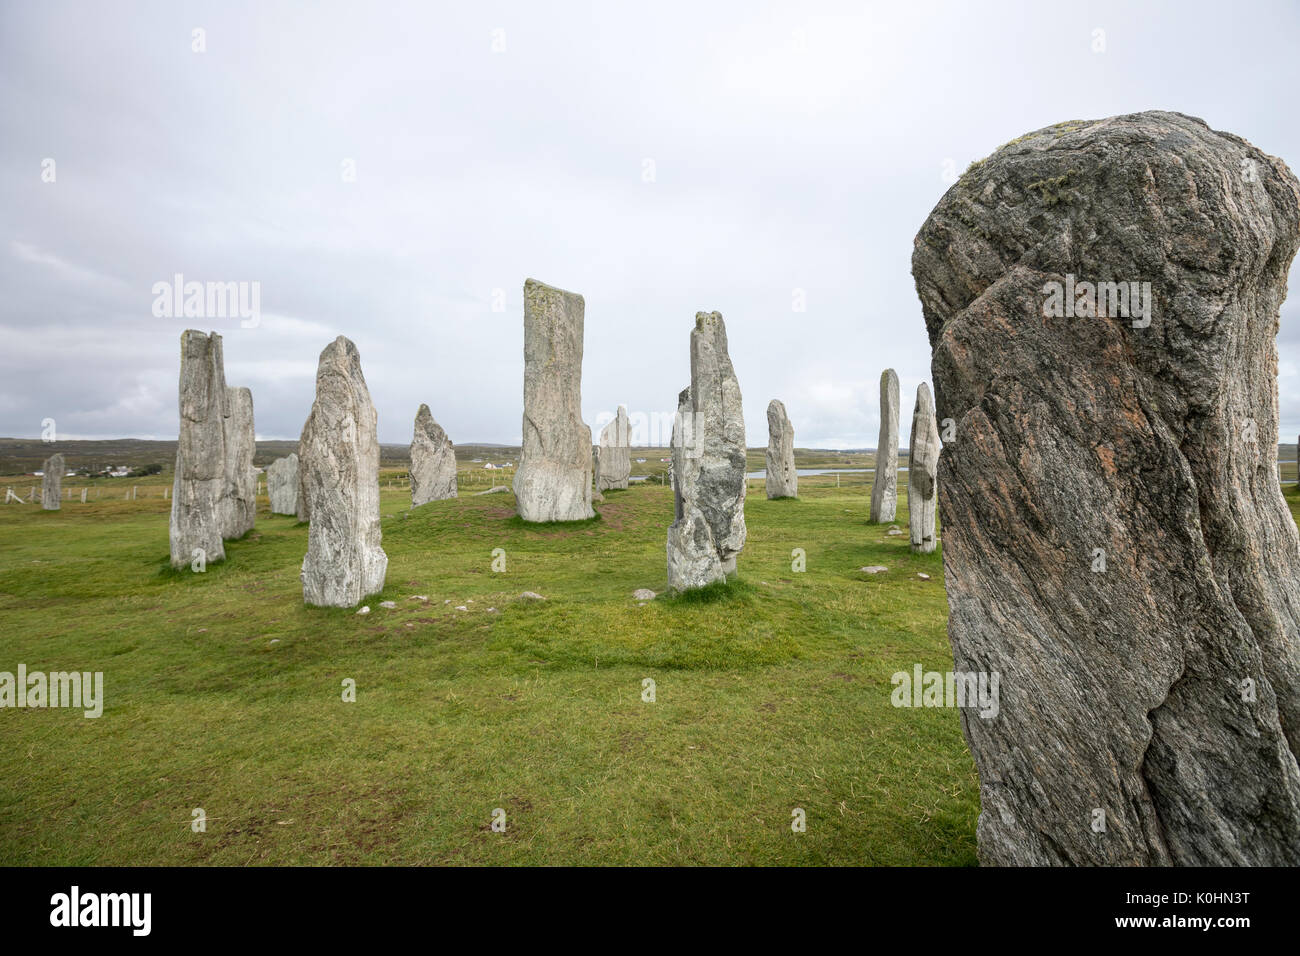 Pierre stratifiée, Callanish Standing Stones, pierres placées dans un motif cruciforme avec un cercle central en pierre, Callanish, Ecosse, Royaume-Uni Banque D'Images